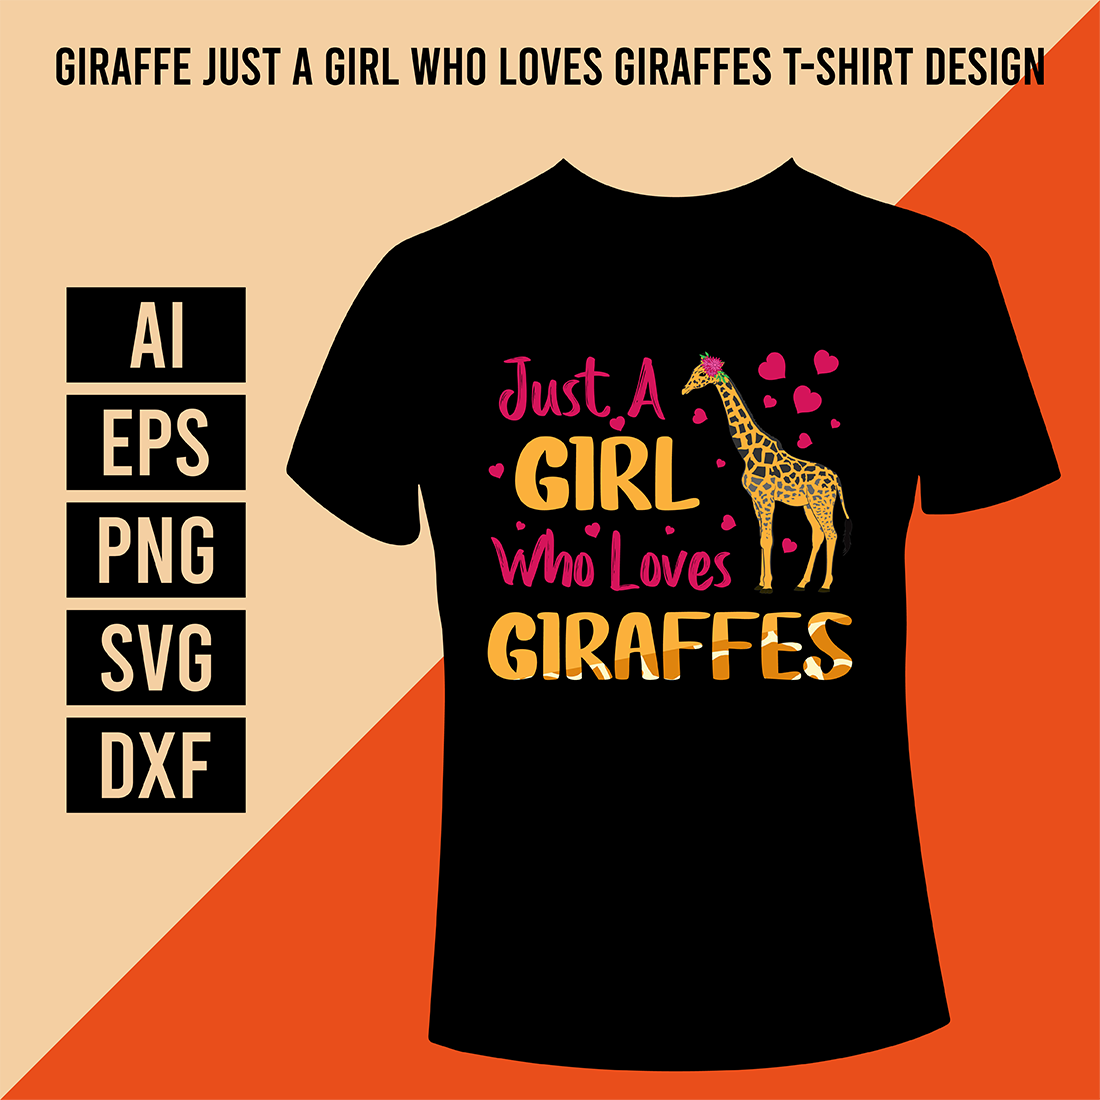 Giraffe Just A Girl Who Loves Giraffes T-Shirt Design cover image.